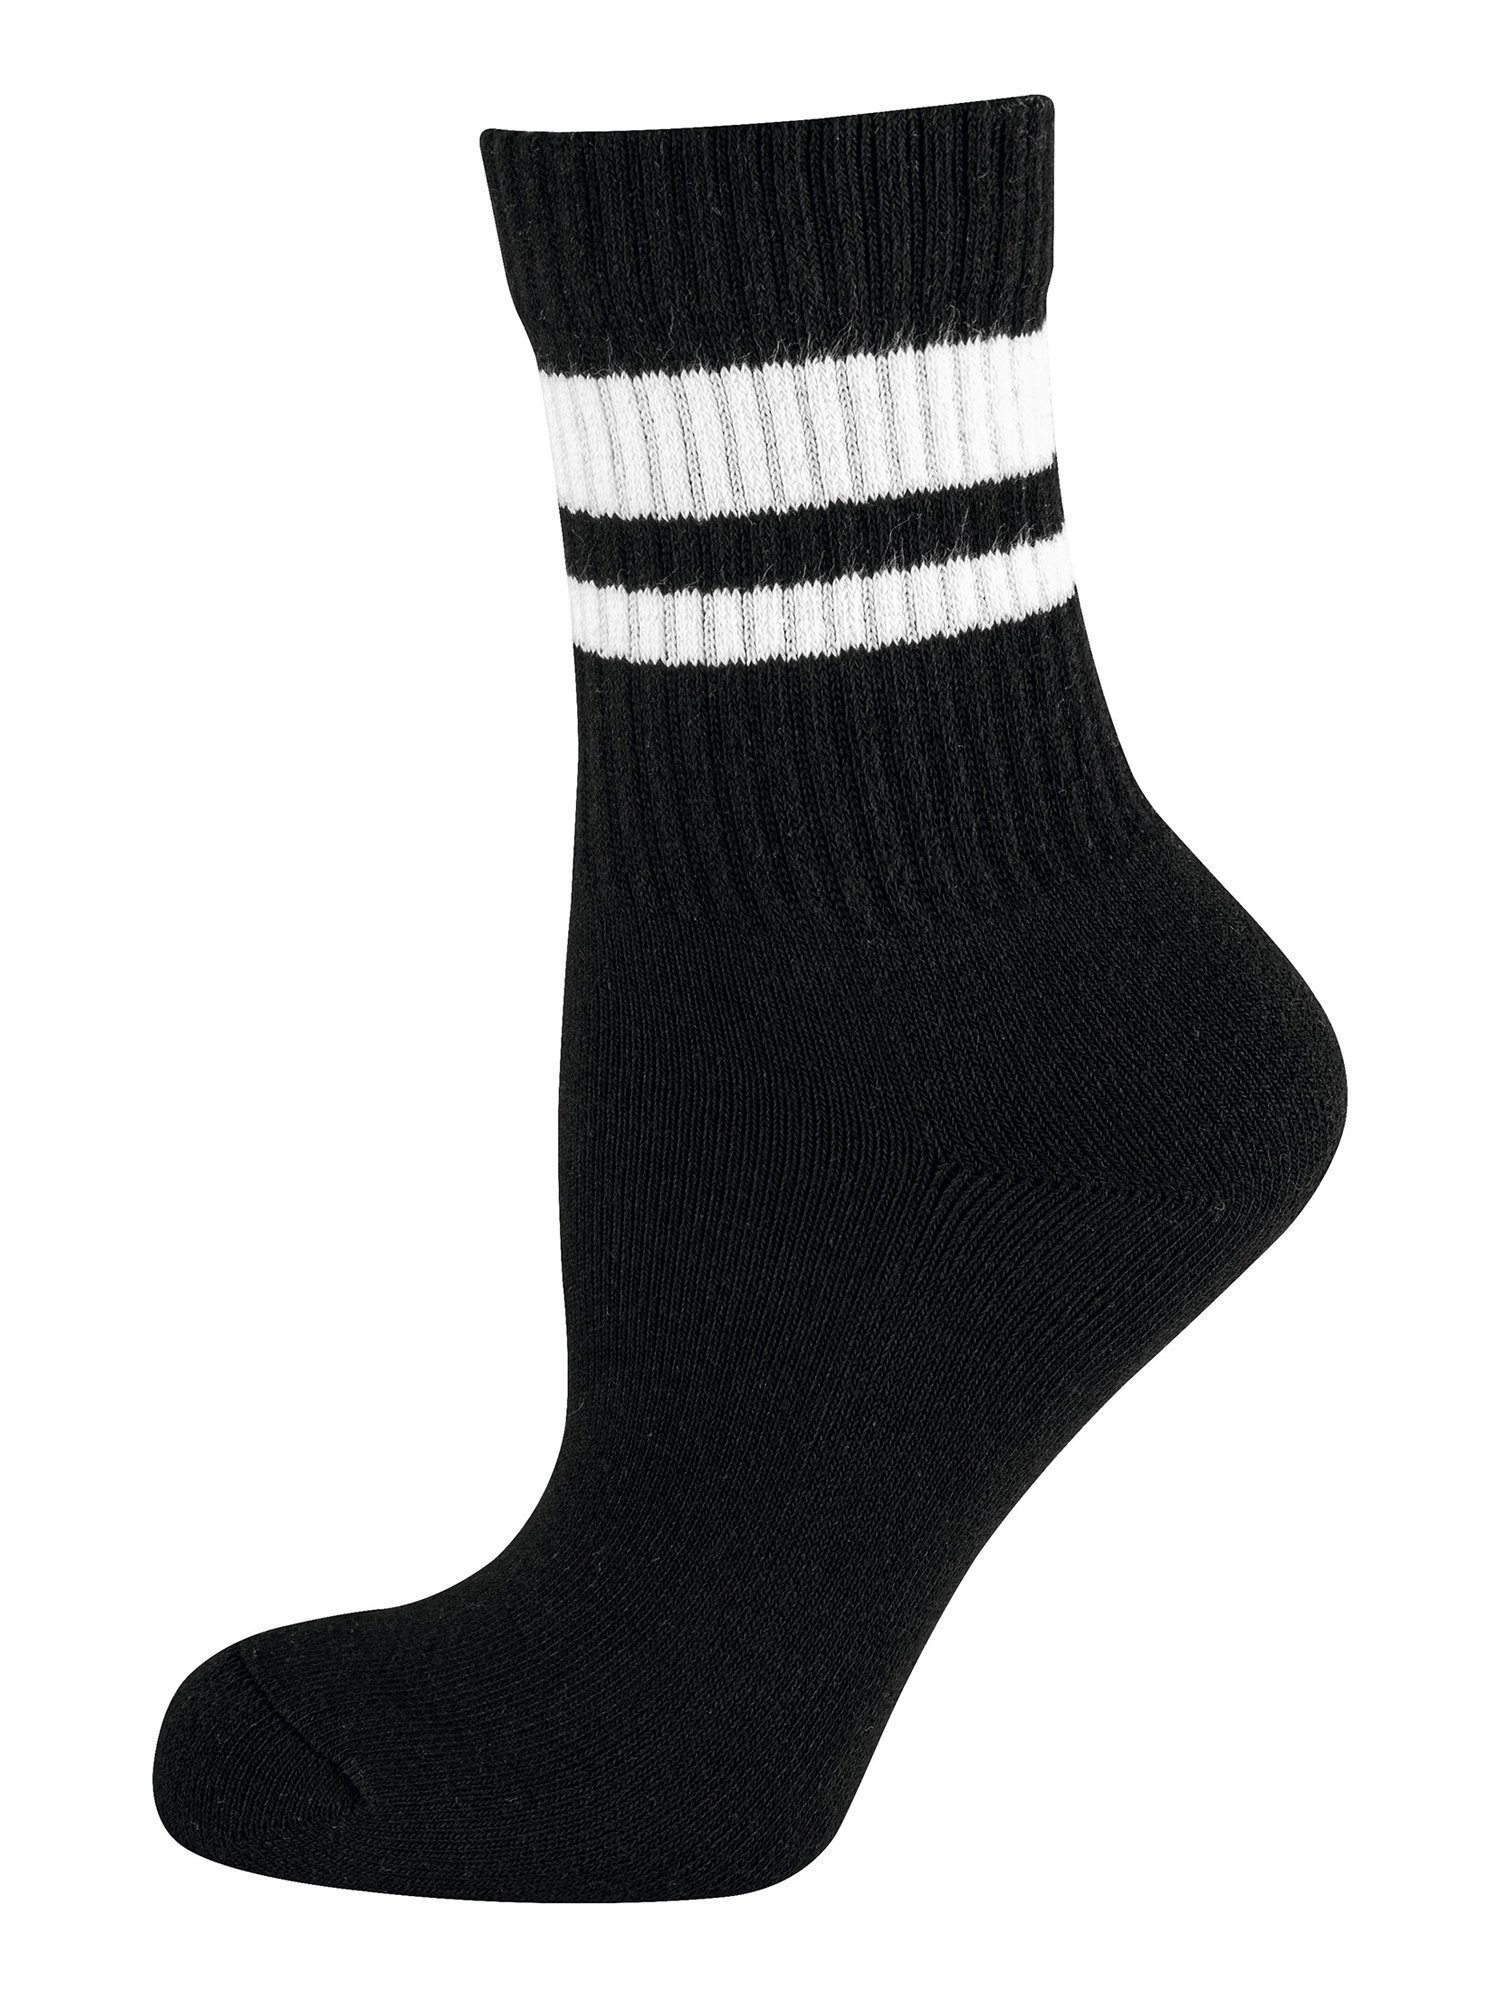 socken weiß/grau/schwarz (12-Paar) strümpfe Sport Die Nur strumpf Freizeitsocken Socken